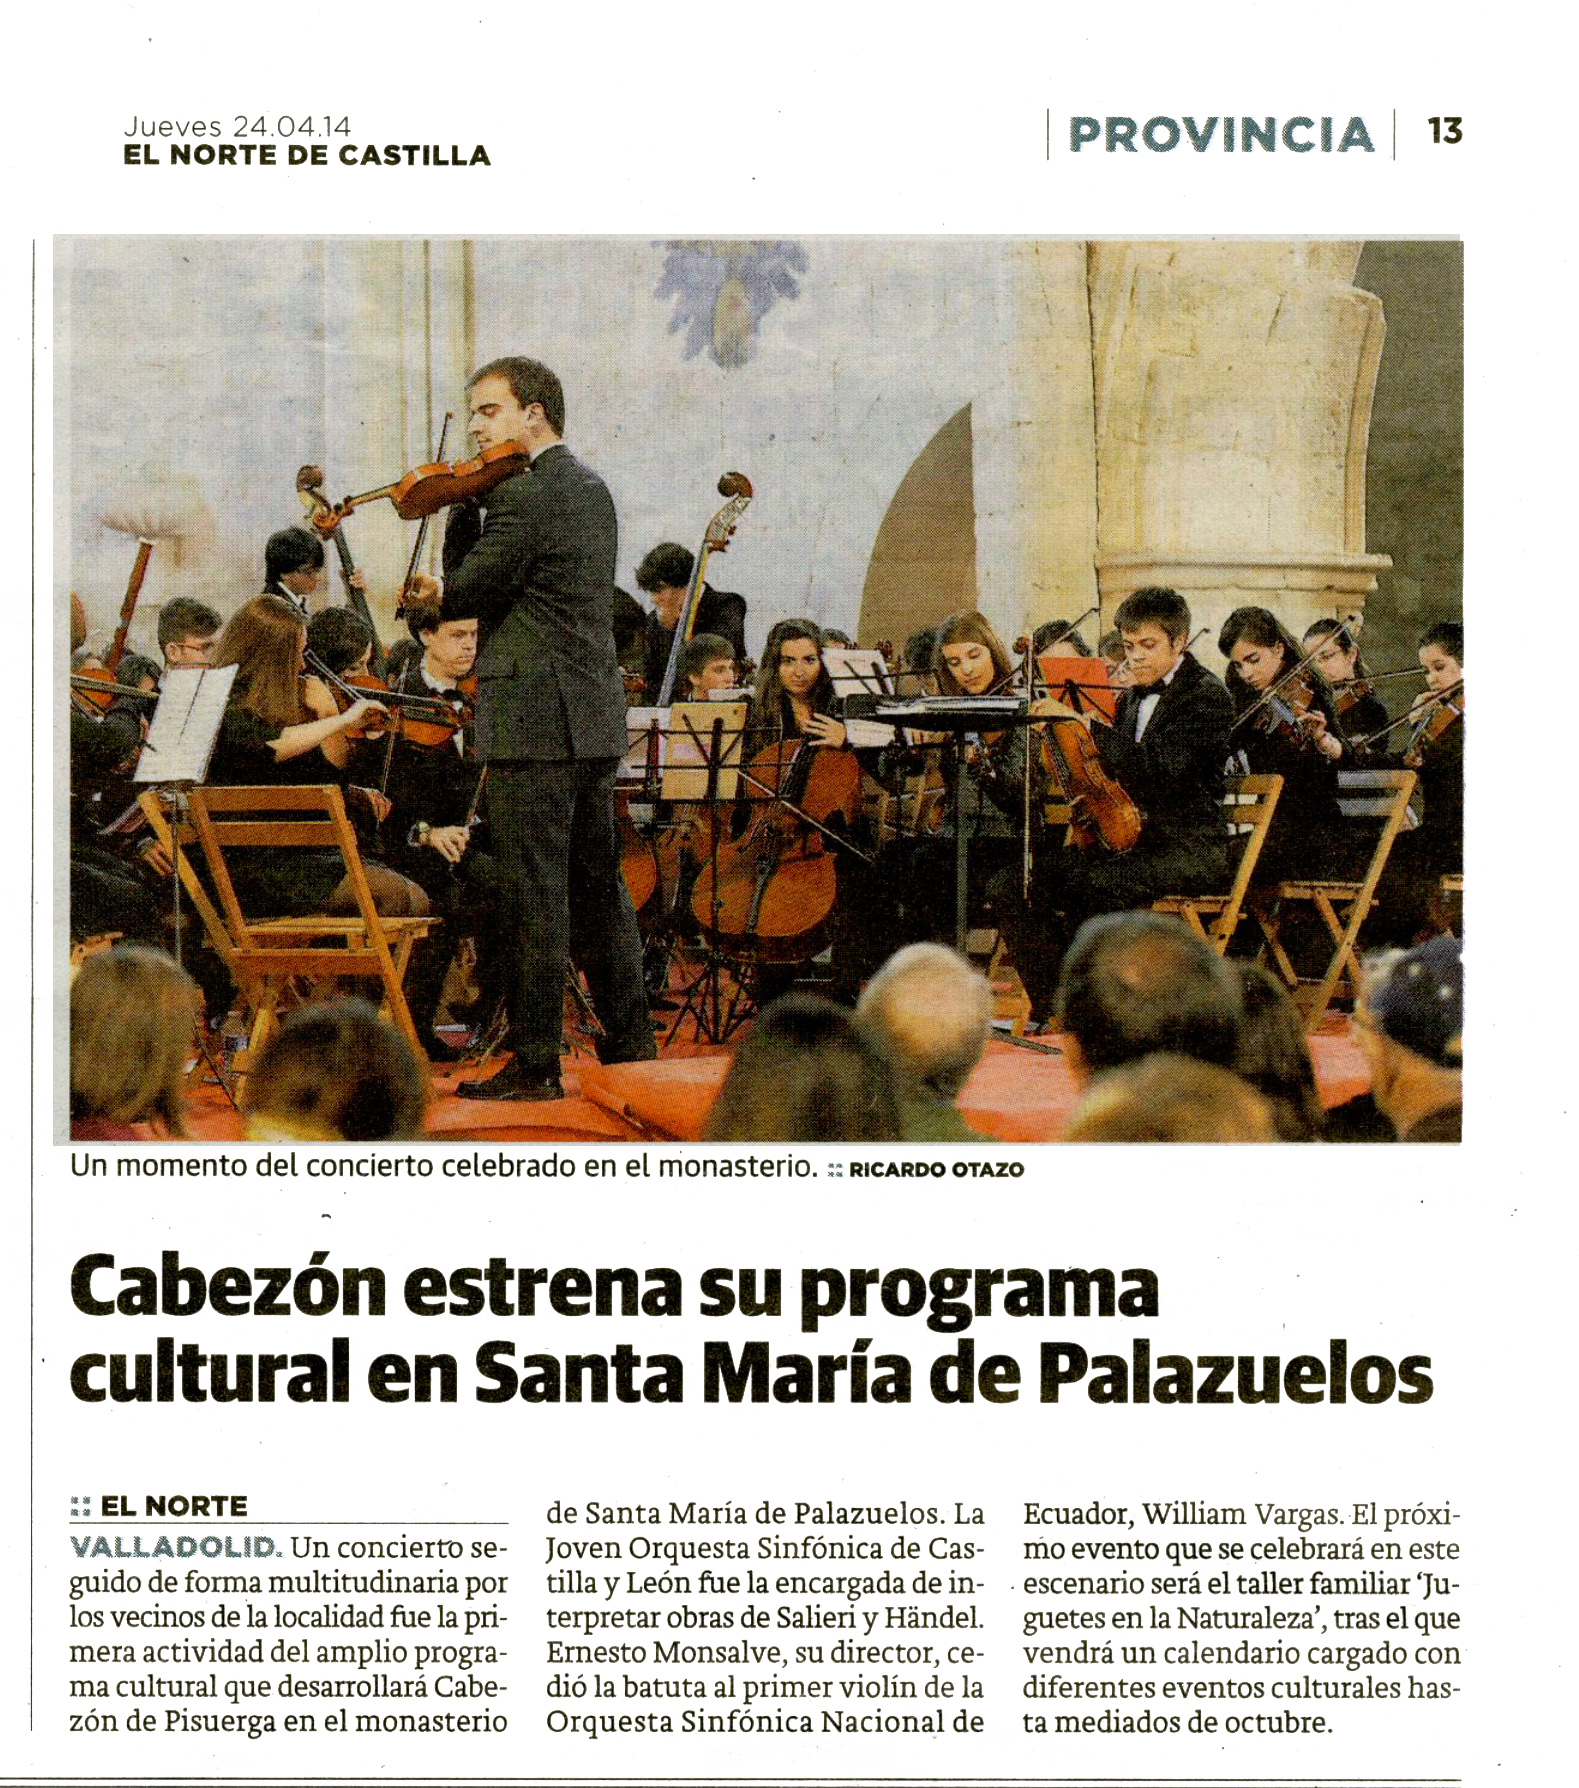 William Vergara, director de la orquesta Sinfónica de Ecuador se puso al frente de un centenar de músicos en St Mª de Palazuelos